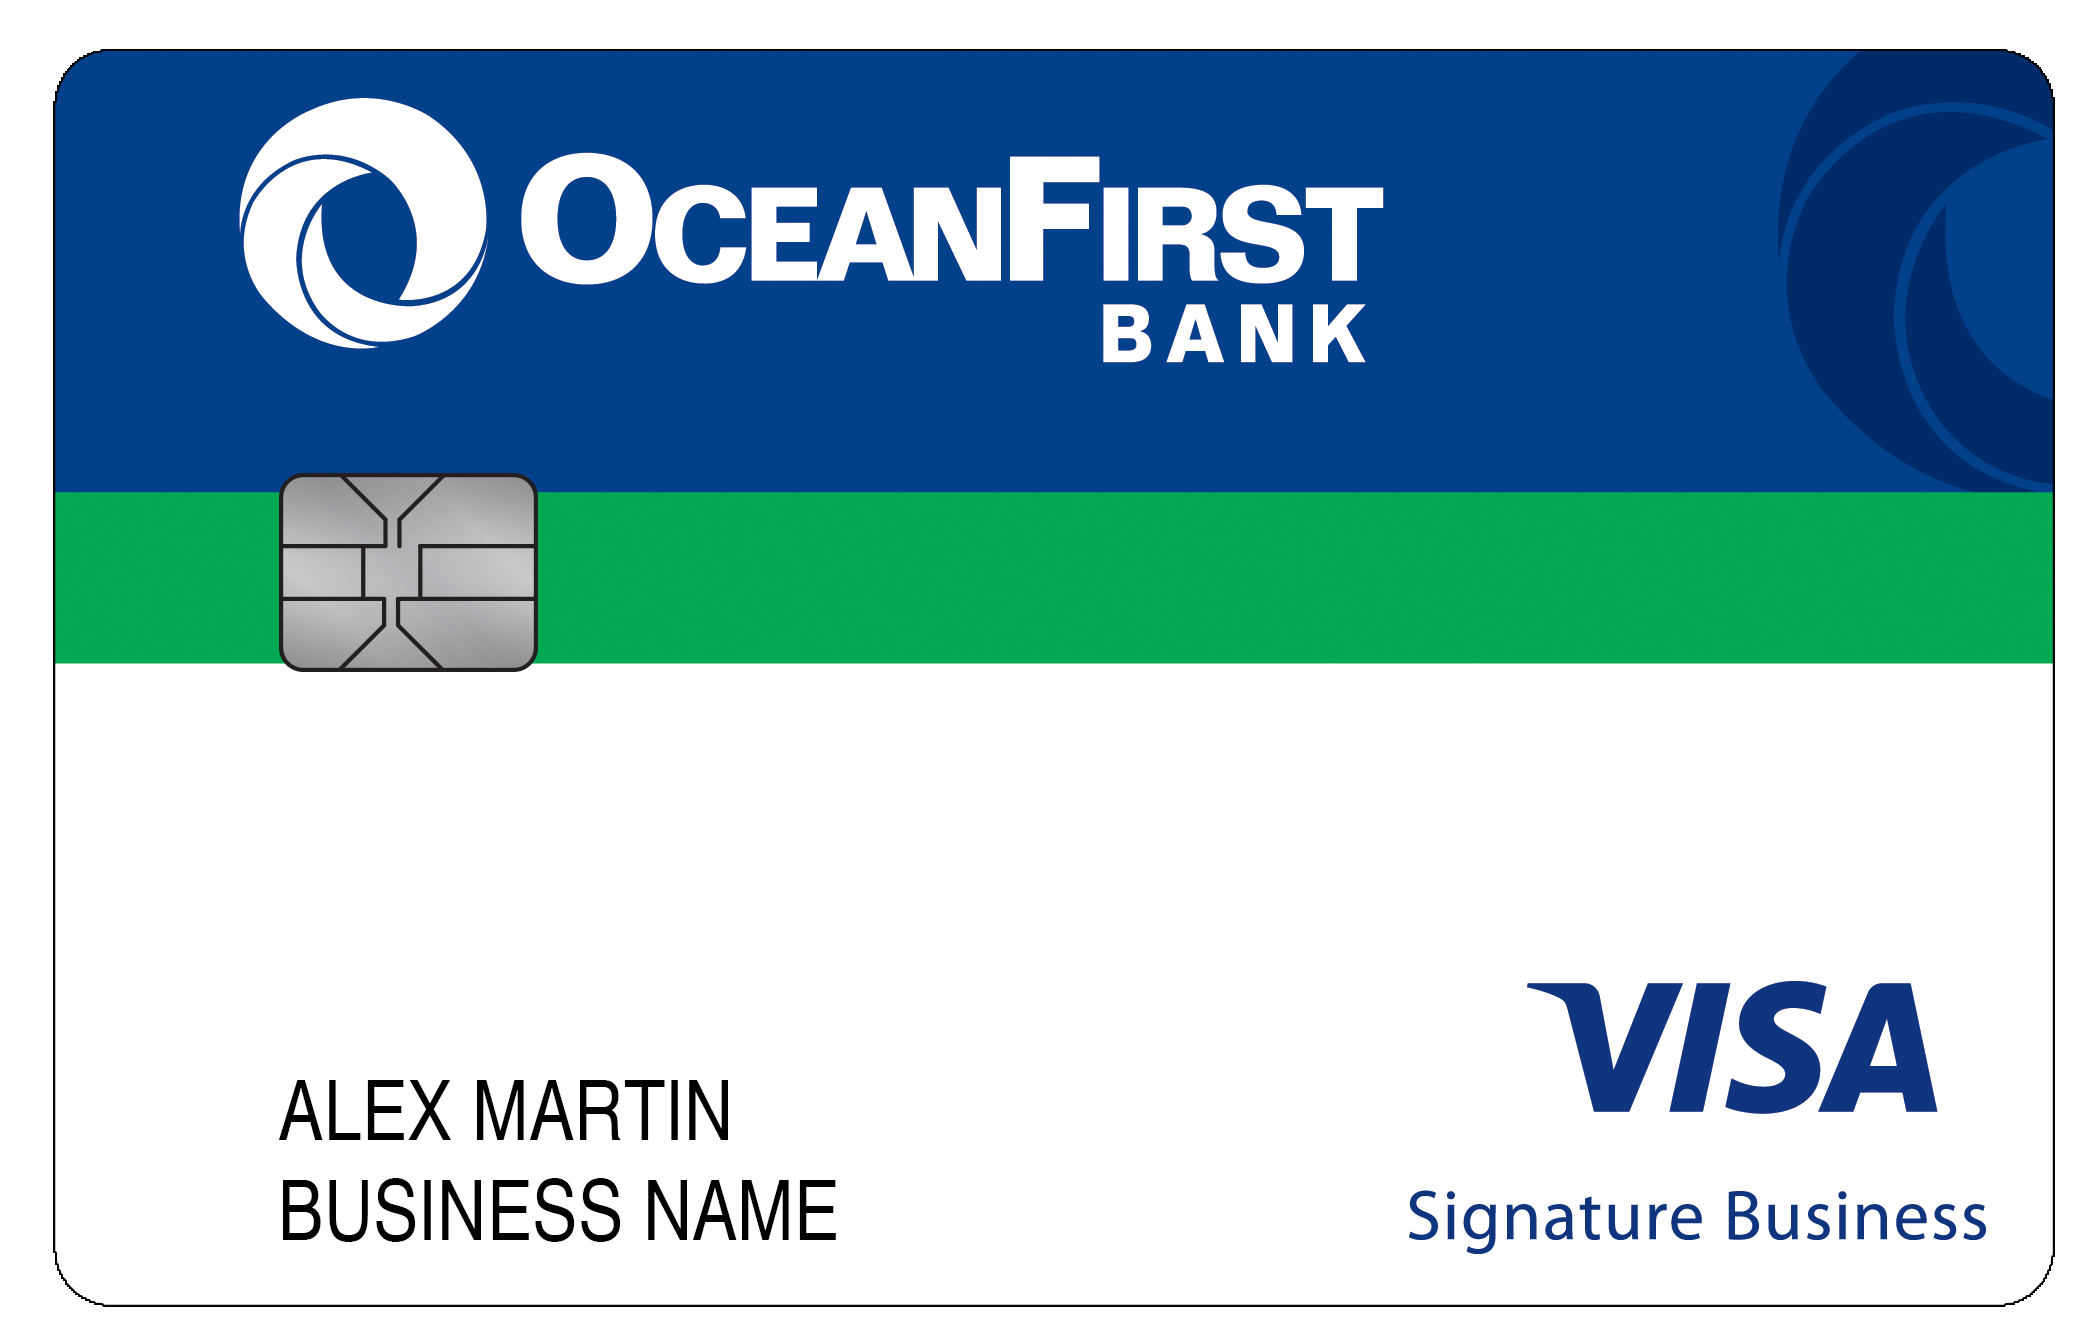 OceanFirst Bank Smart Business Rewards Card